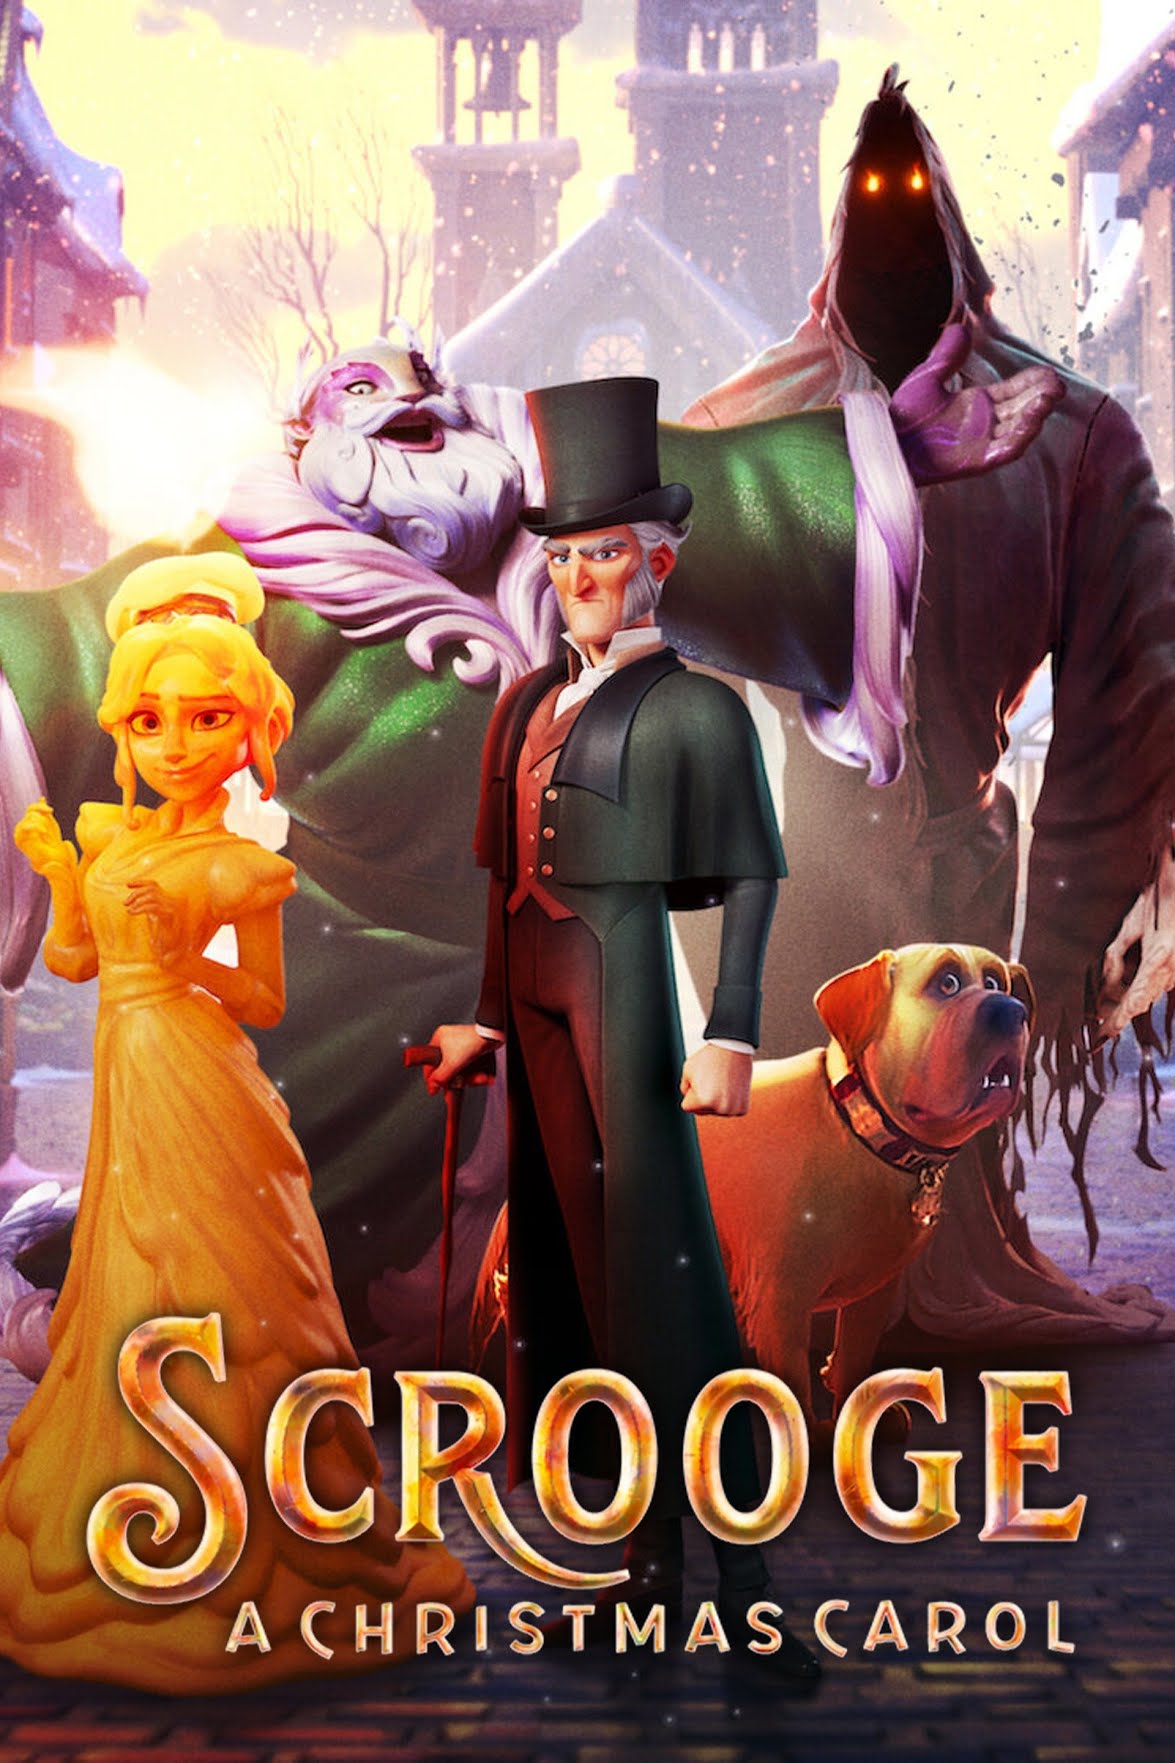 [MINI Super-HQ] Scrooge: A Christmas Carol (2022) สครูจ: บทเพลงคริสต์มาส [1080p] [NETFLIX] [พากย์ไทย 5.1 + เสียงอังกฤษ 5.1] [บรรยายไทย + อังกฤษ] [เสียงไทย + ซับไทย] [DOSYAUPLOAD]